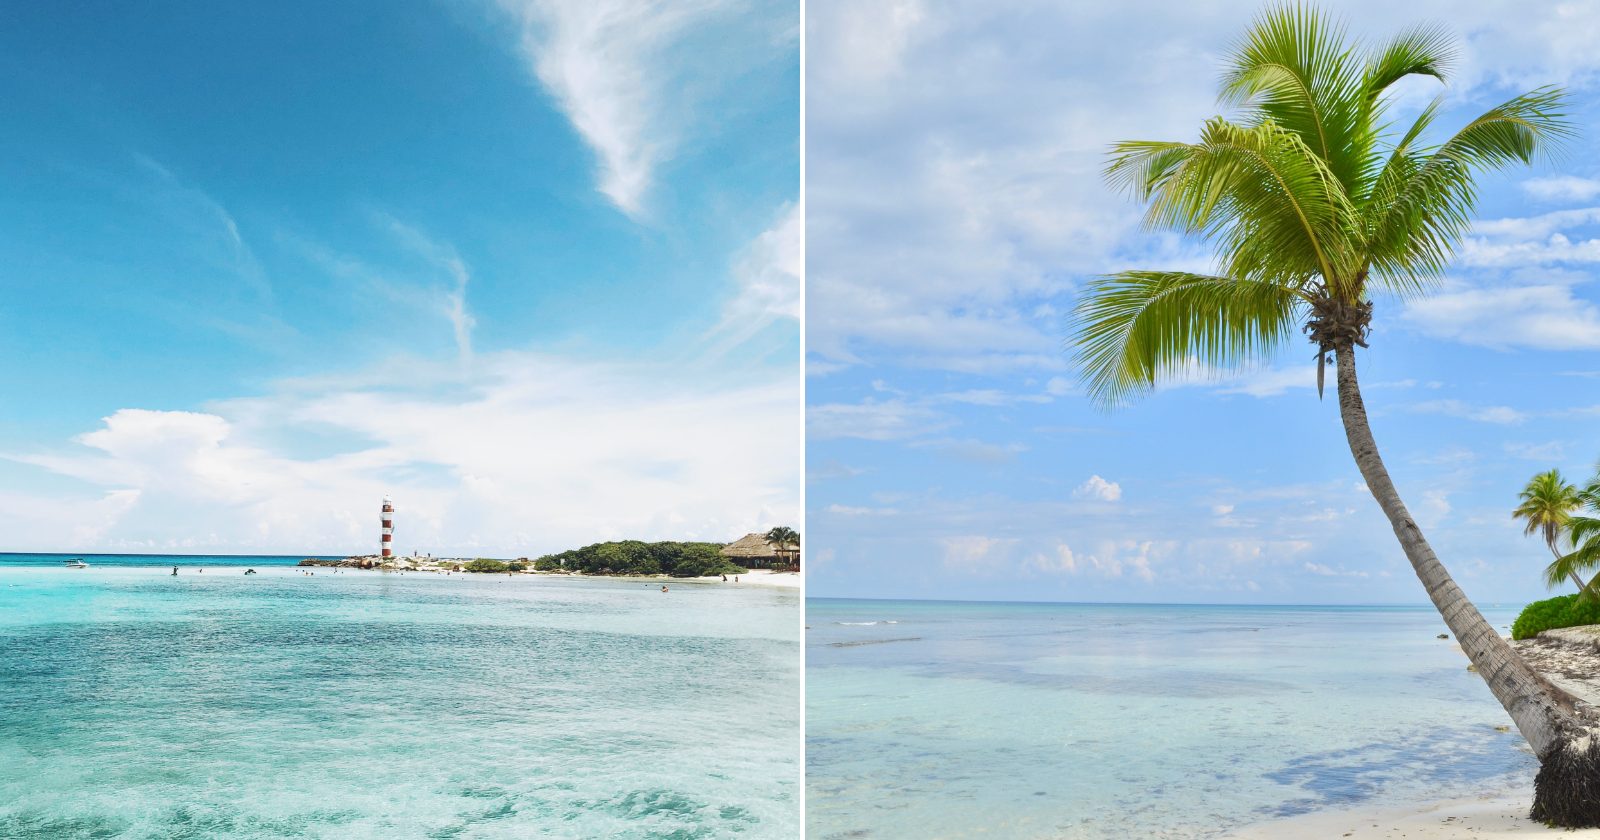 Quanto custa viajar para o Caribe? Listamos todos os gastos e dicas para economizar (Imagens: Unsplash)